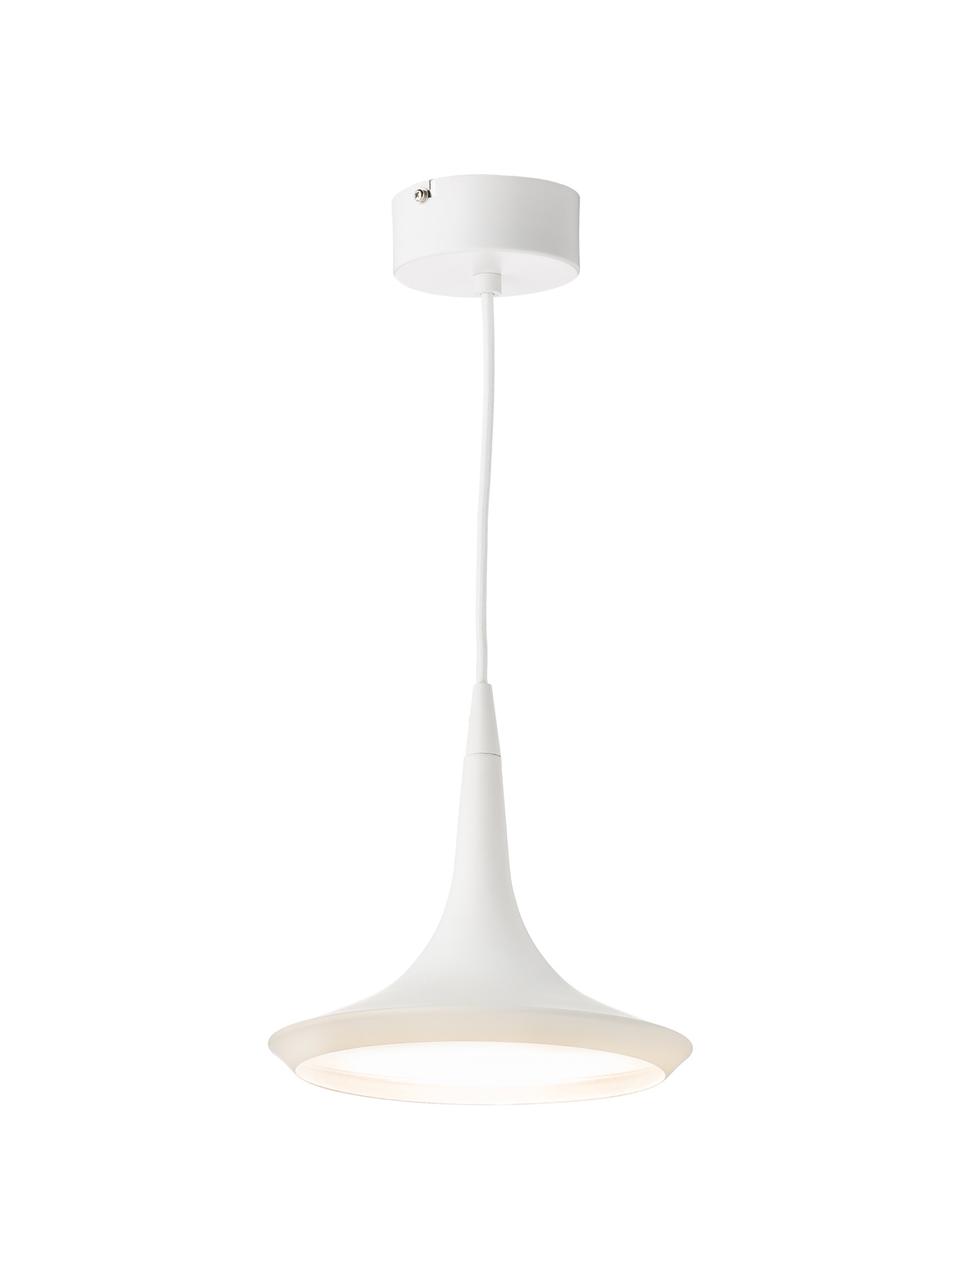 Malé závěsné LED svítidlo Swing, Bílá, krémová